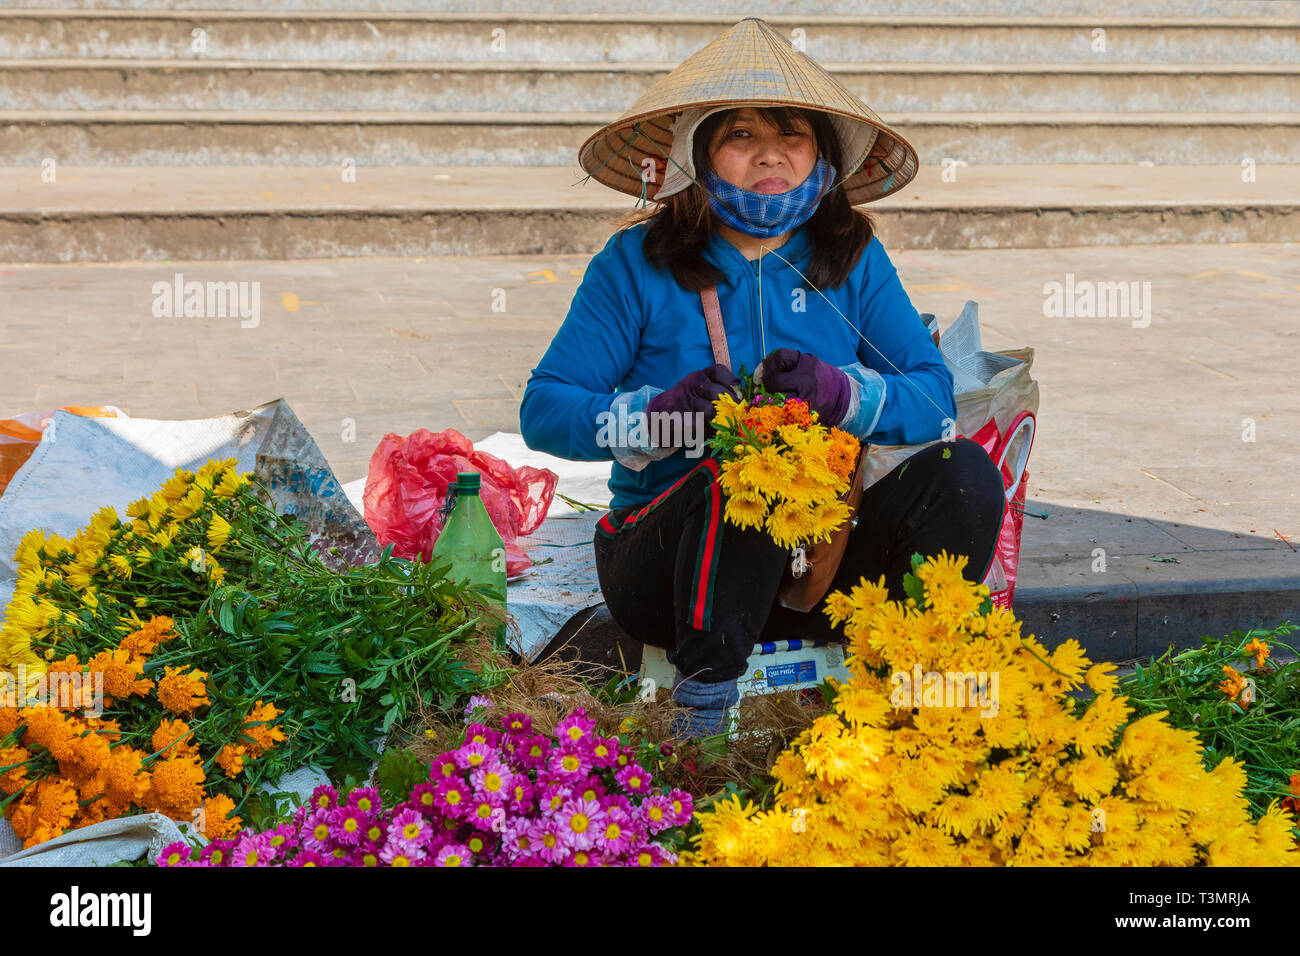 Vietnamese woman selling fleurs fraîches au marché aux fleurs, vieille ville de Hoi An, Quang Nam Provence, Hanoi, Asia Banque D'Images